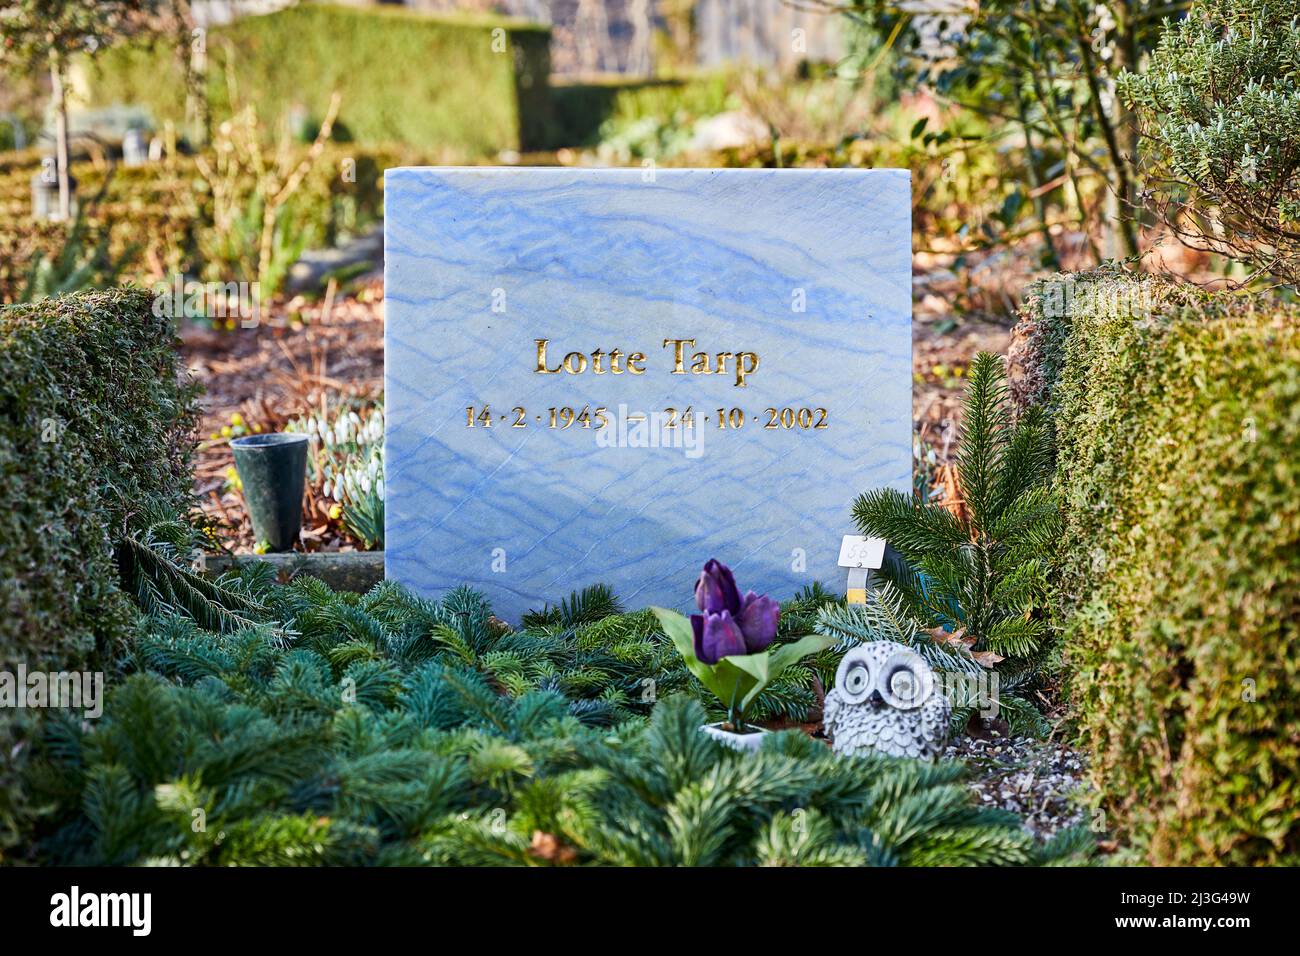 Lotte Tarp (14.2.1945 - 24.10.2002), attrice cinematografica danese, lapidi nel cimitero di Holmen, Copenaghen, Danimarca Foto Stock